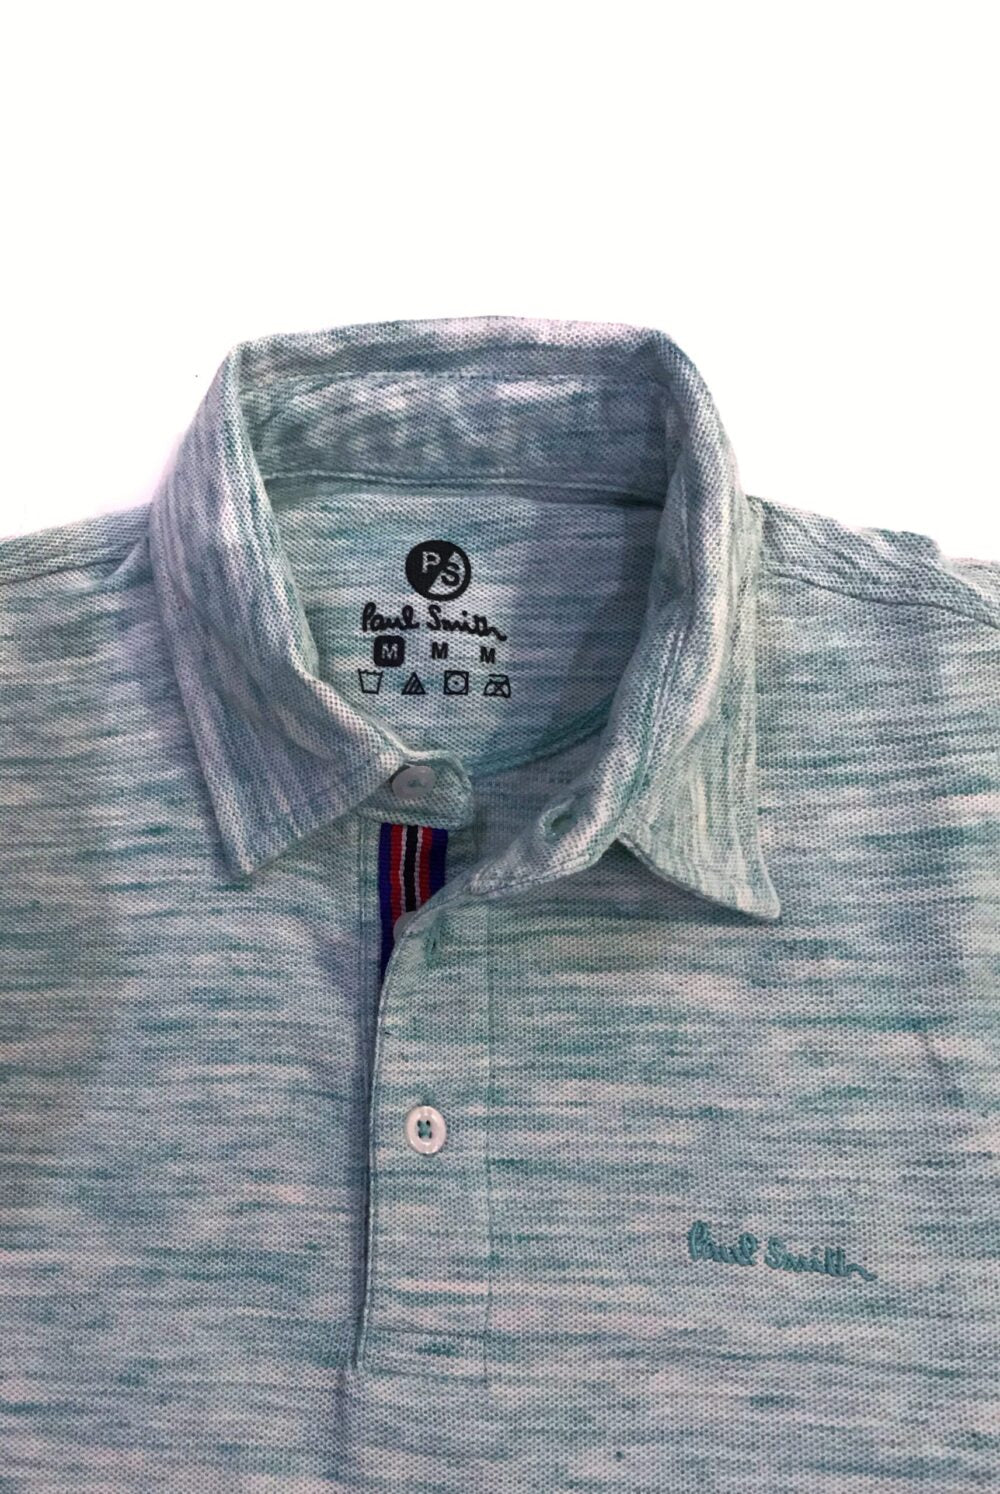 Paul Smith Cotton Polo Shirt – Ocean Green